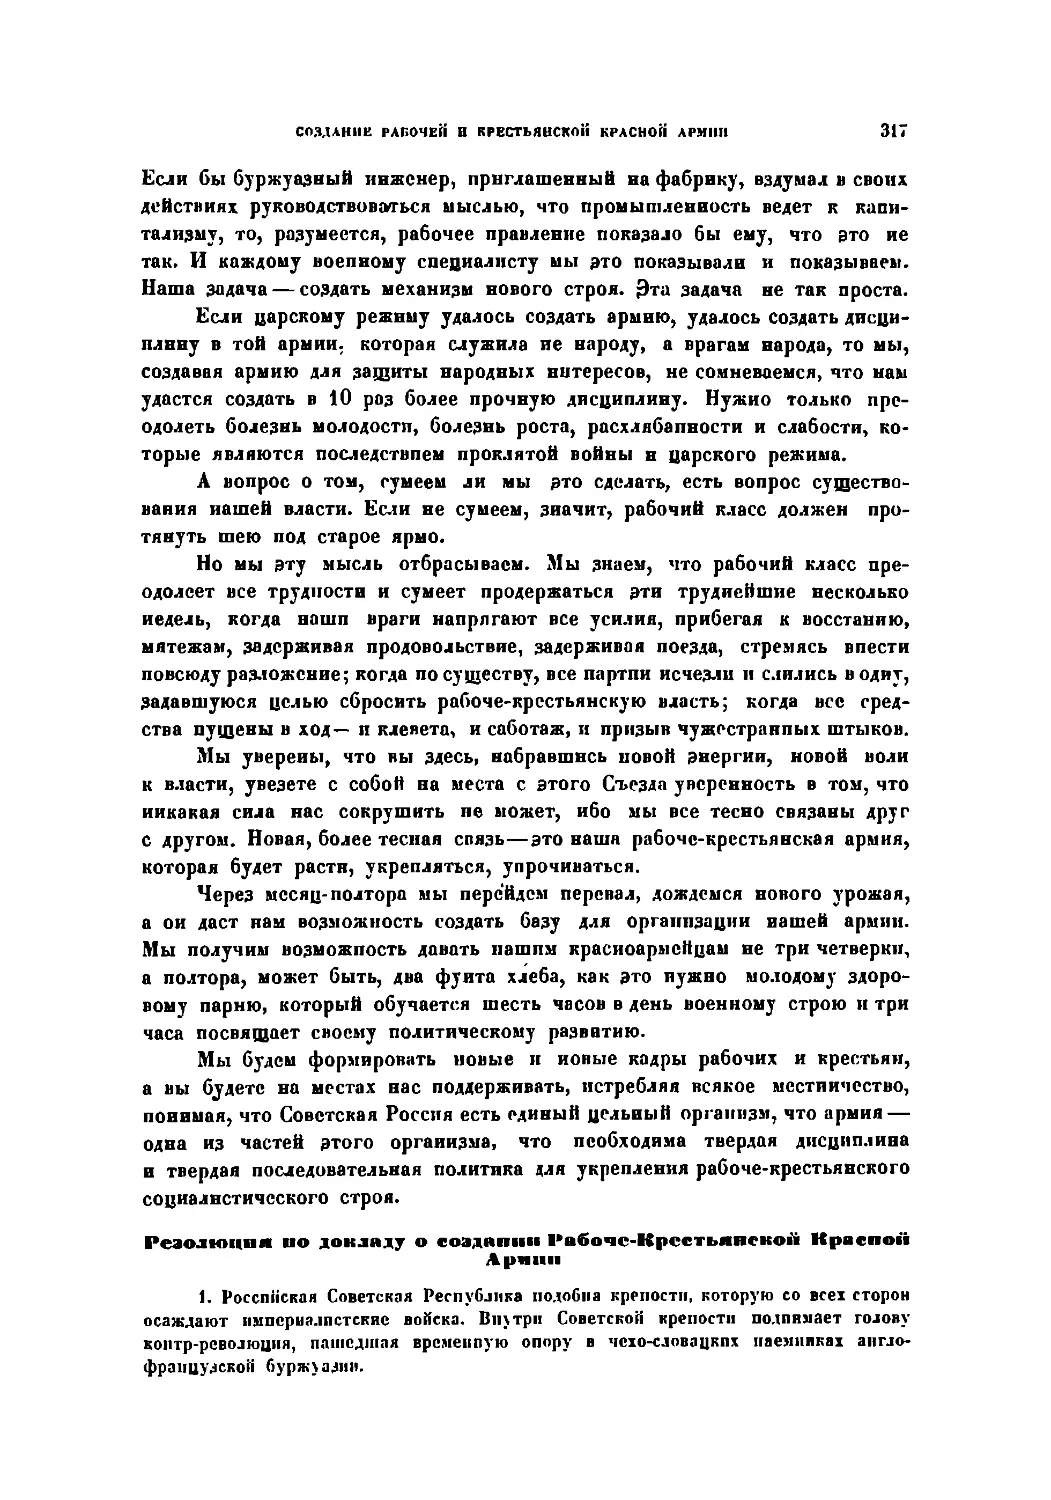 Резолюция по докладу о создании Раб. и Кр. Кр. Армии, принятая 3-м Съездом Советов